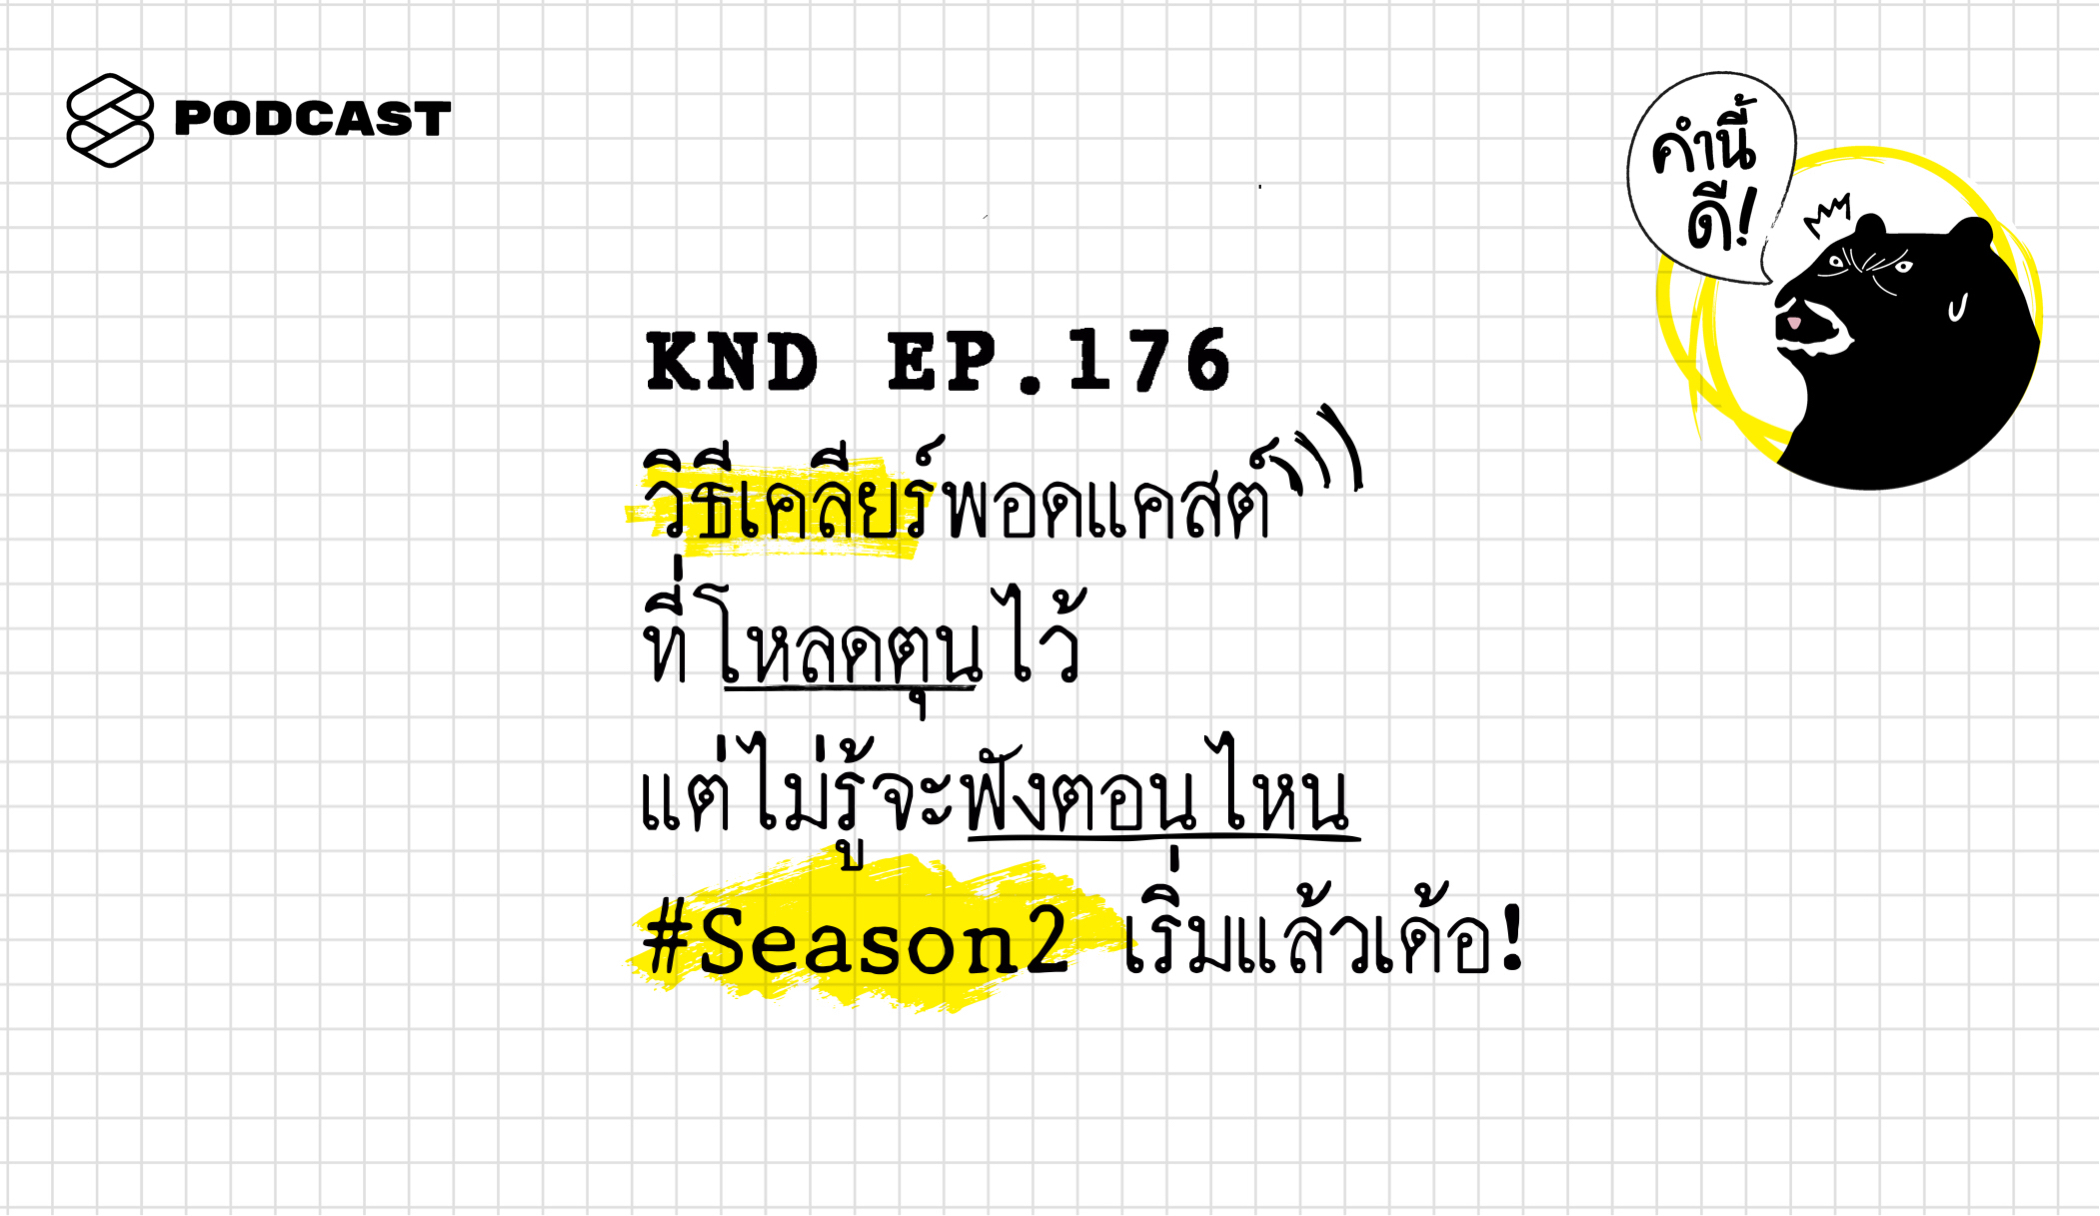 KND176 วิธีเคลียร์พอดแคสต์ที่โหลดตุนไว้ แต่ไม่รู้​จะ​ฟัง​ตอน​ไหน​ #Season2 เริ่มแล้วเด้อ!